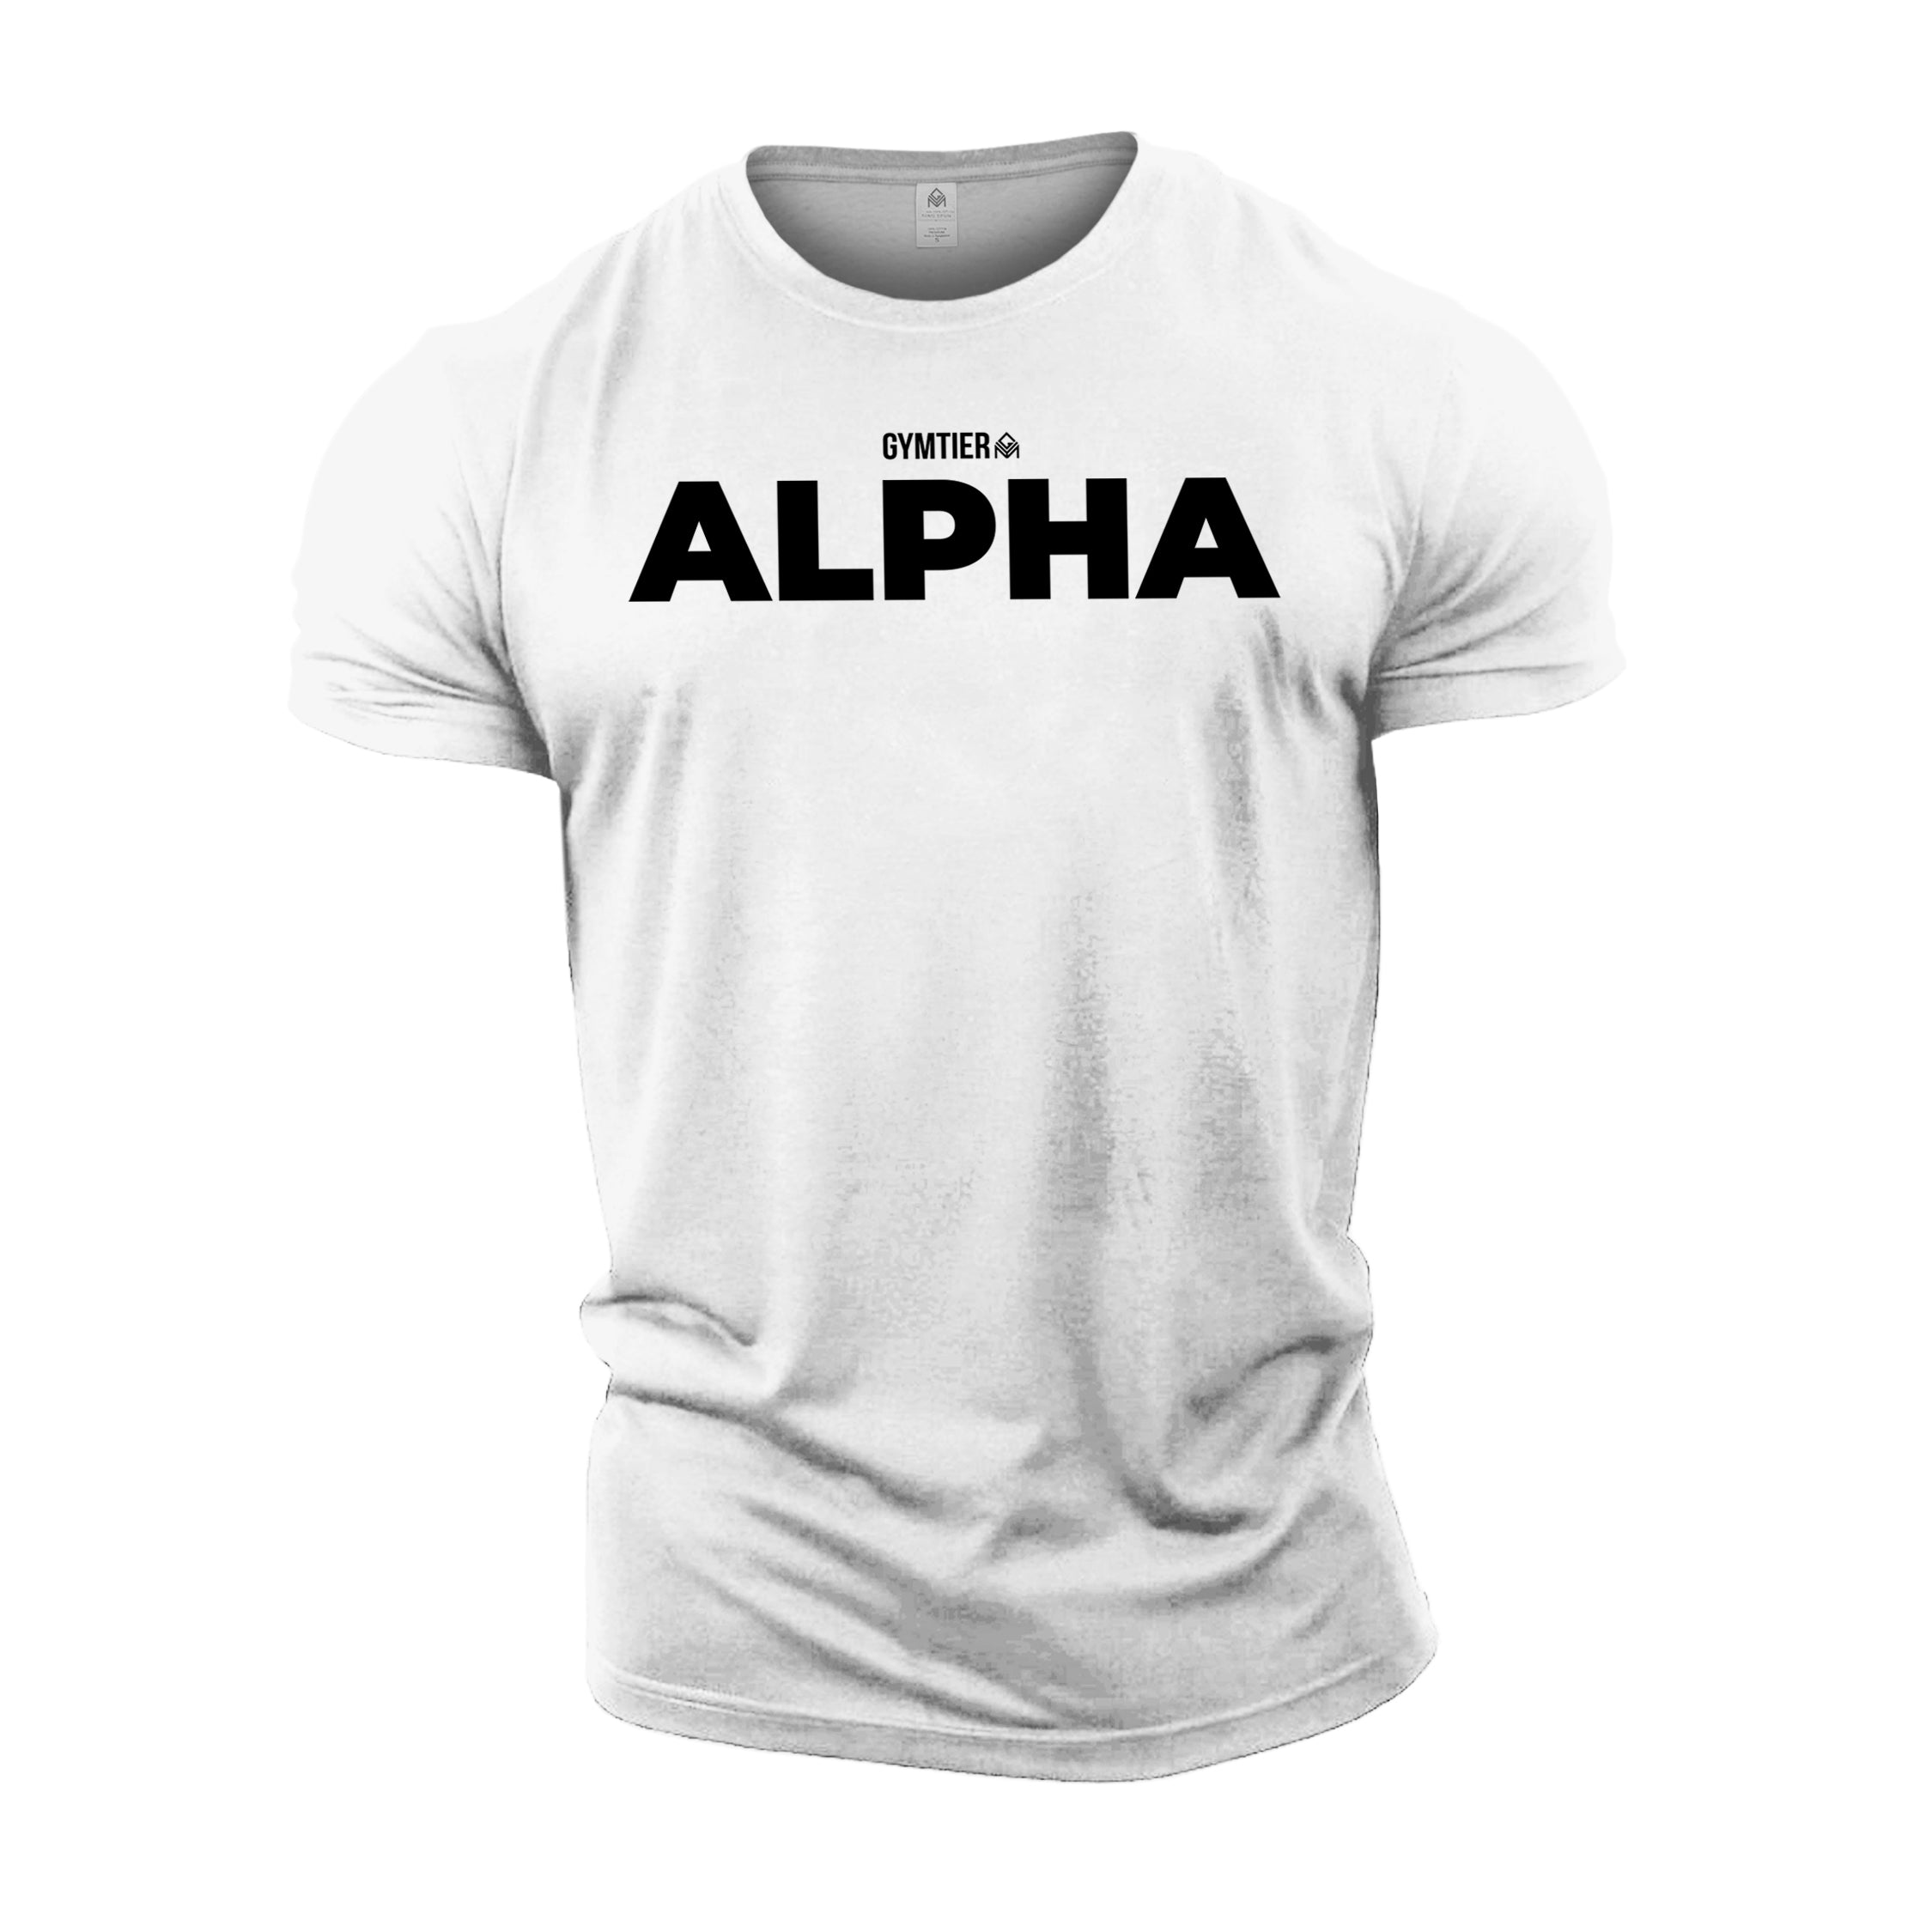 GYMTIER Alpha T-Shirt